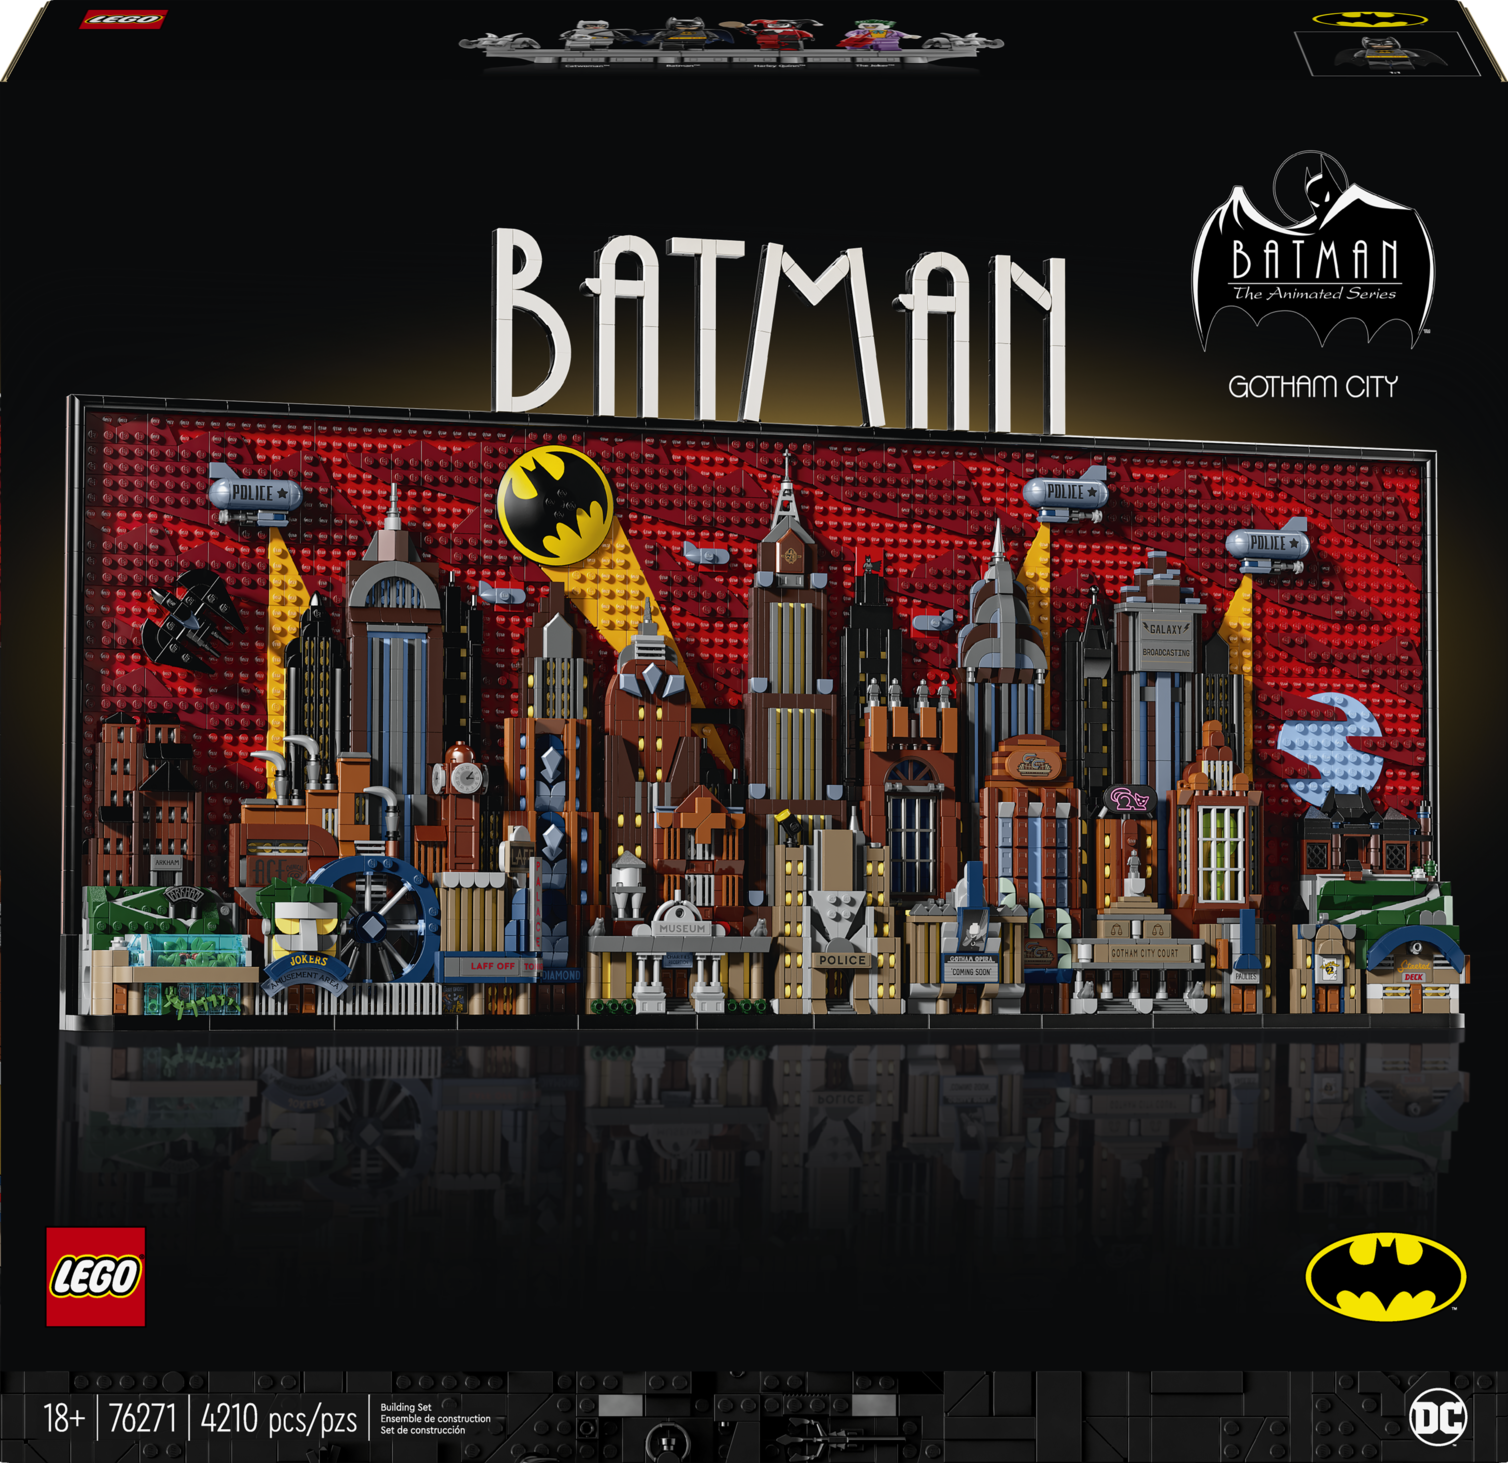 LEGO celebra los 85 años de Batman con un nuevo set 3